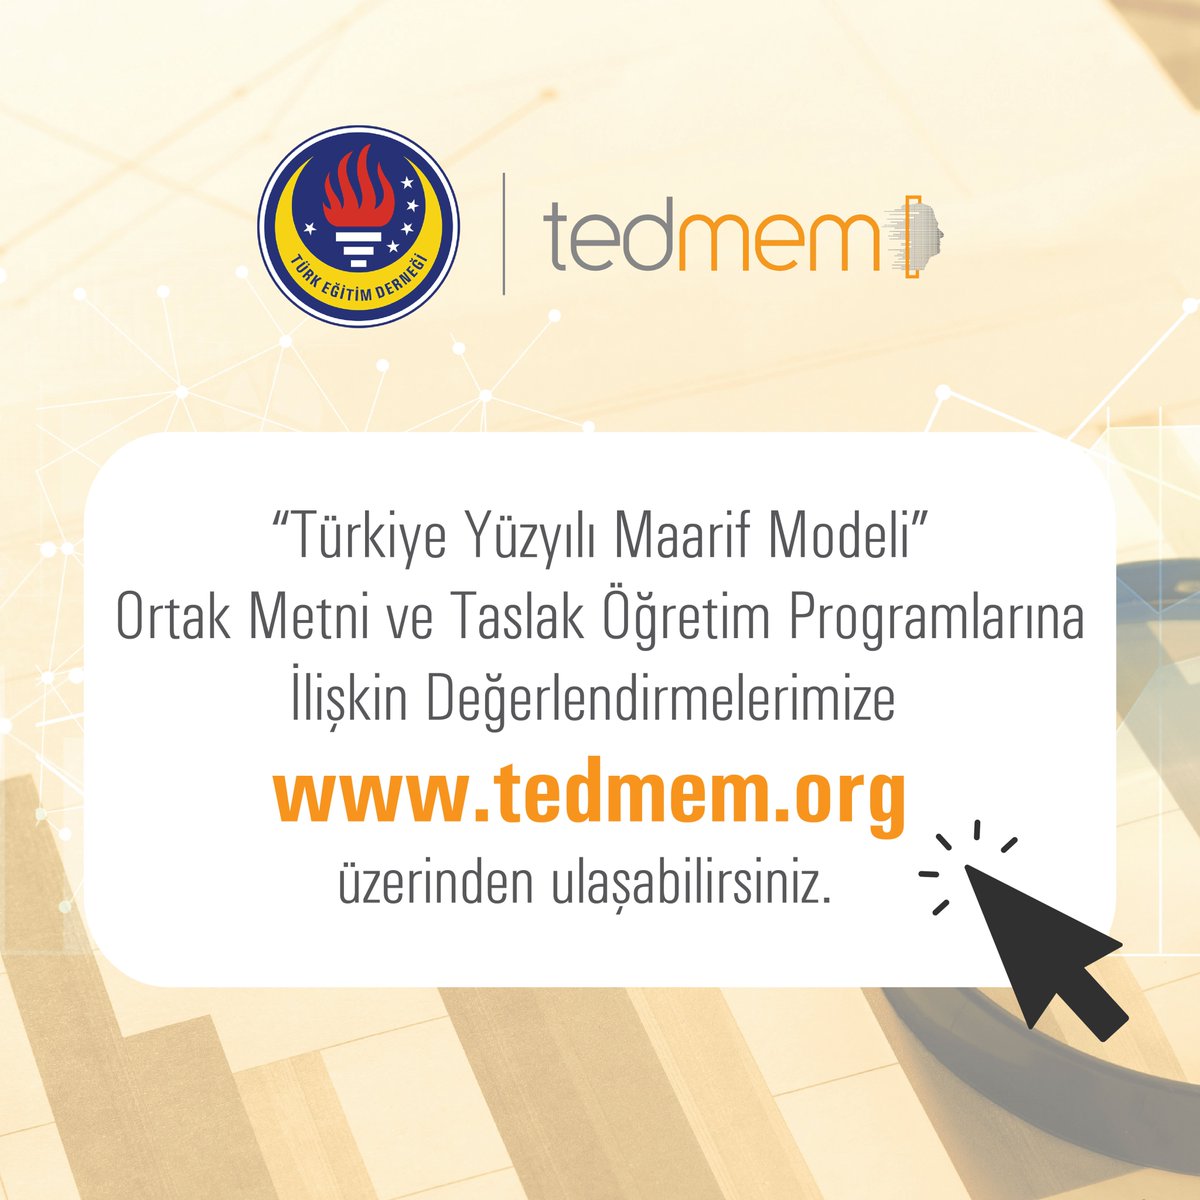 Milli Eğitim Bakanlığı’na iletilen “Türkiye Yüzyılı Maarif Modeli” Ortak Metni ve Taslak Öğretim Programlarına İlişkin Değerlendirmelerimize tedmem.org üzerinden ulaşabilirsiniz.